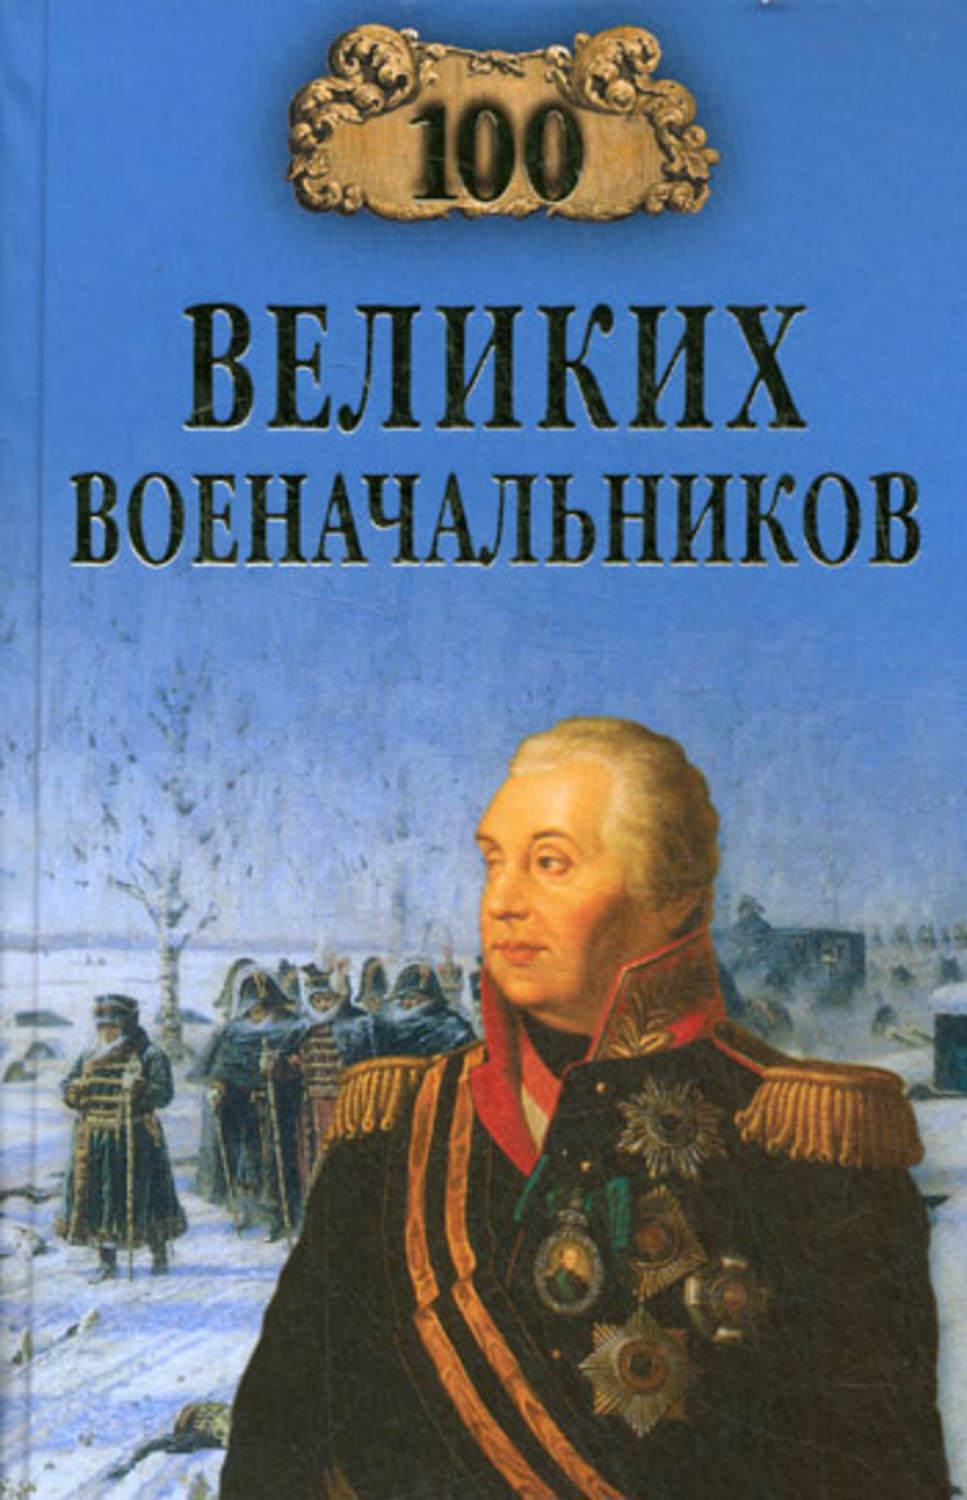 Шишов Алексей Васильевич - «100 великих военачальников»